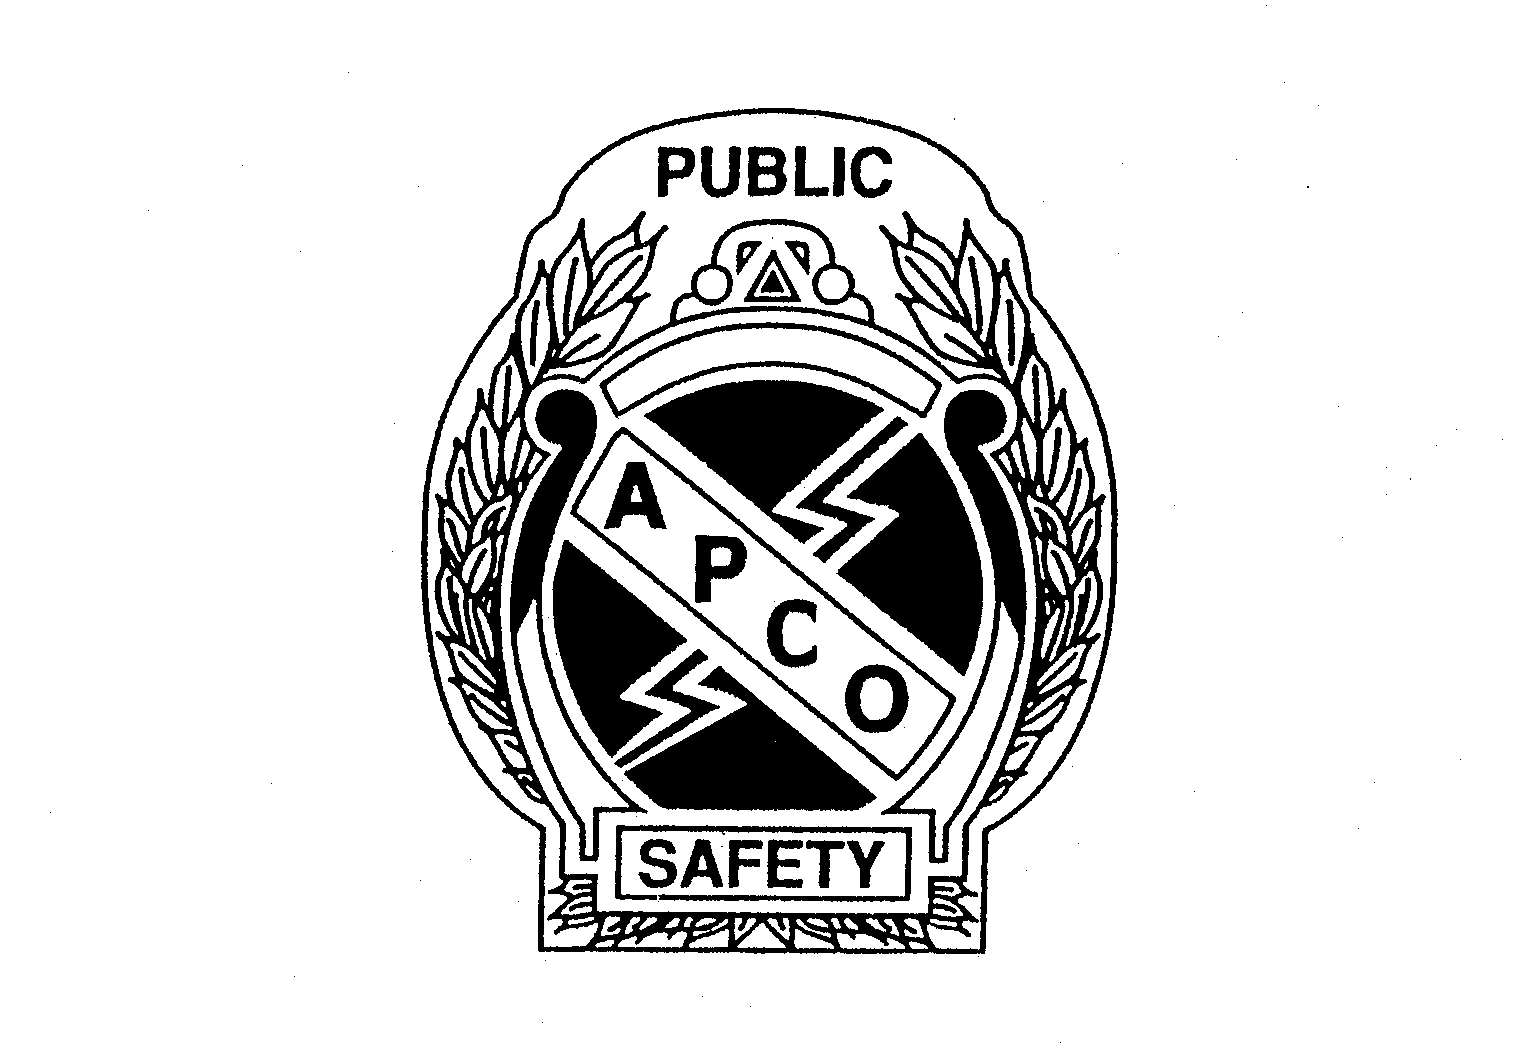  APCO PUBLIC SAFETY